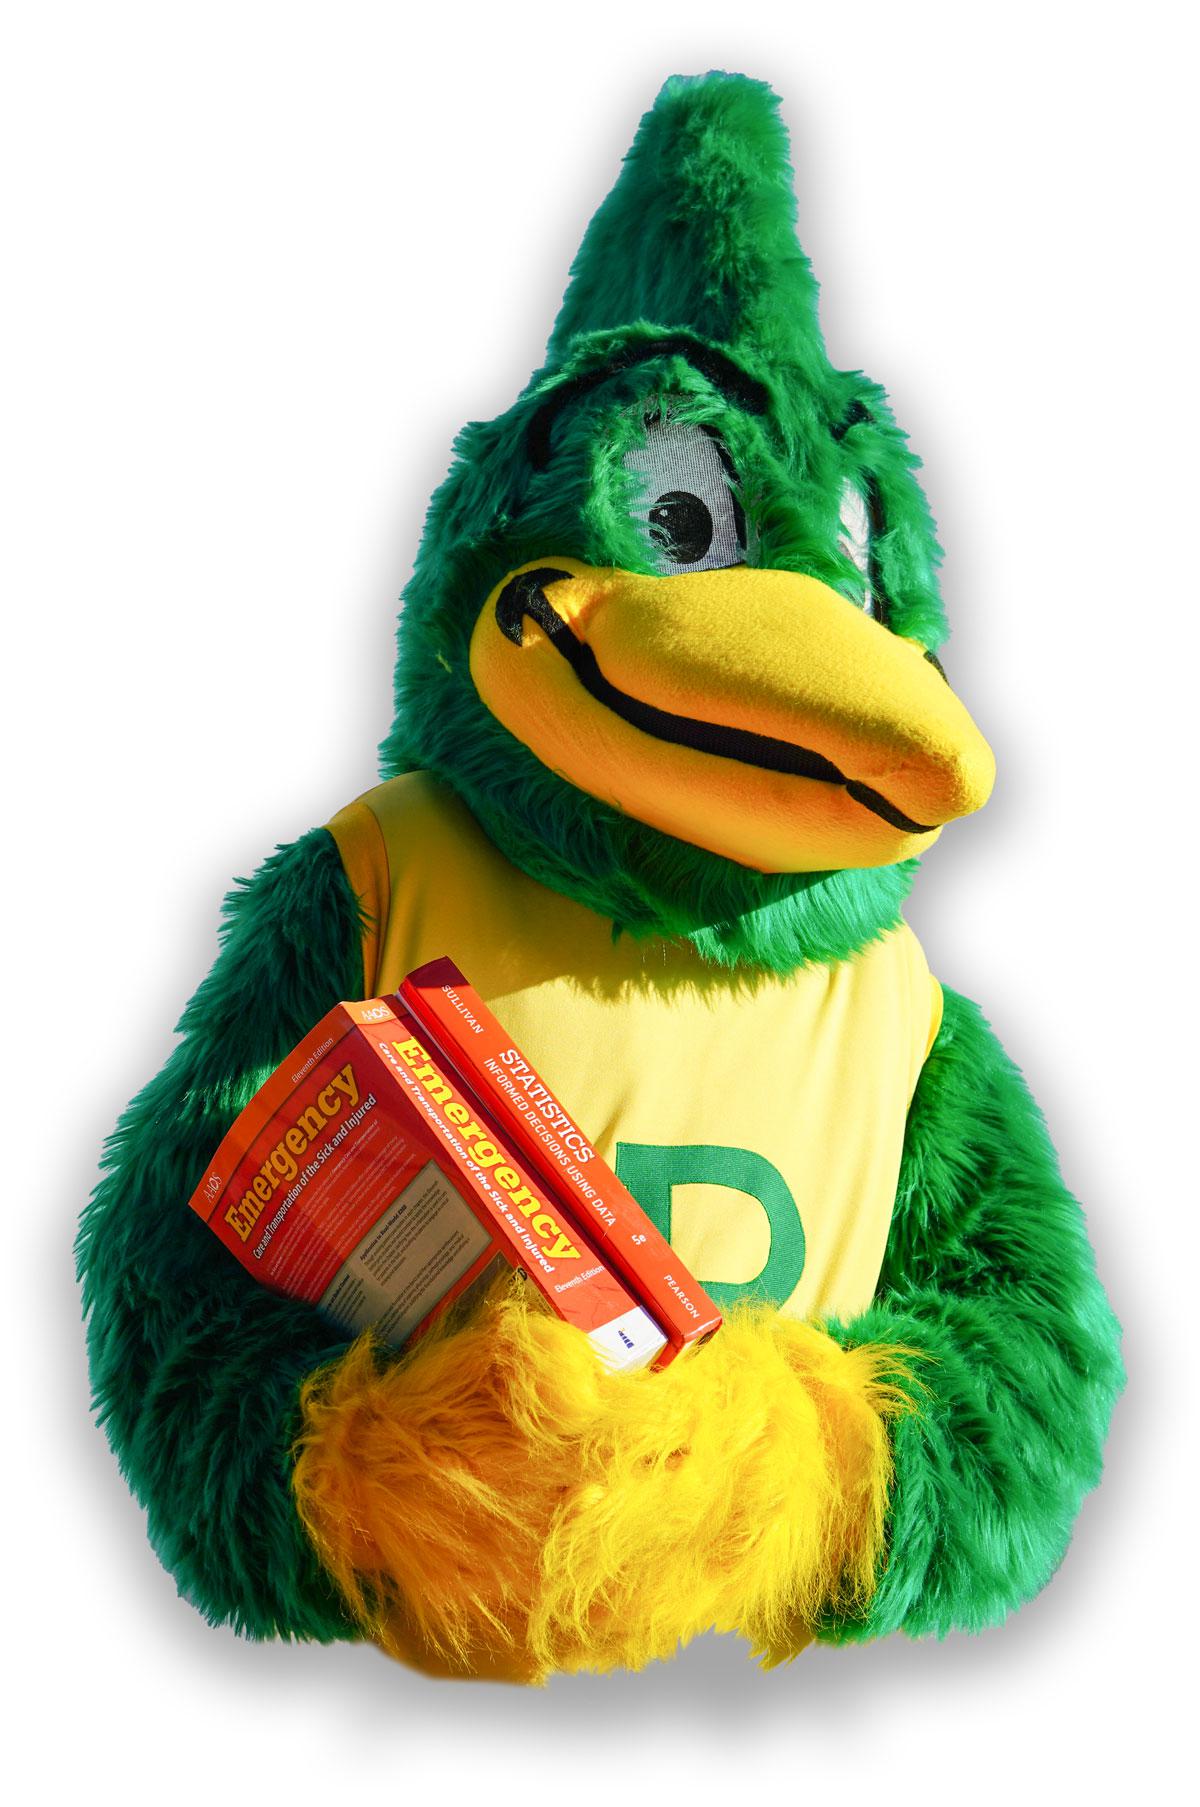 roadrunner mascot with books